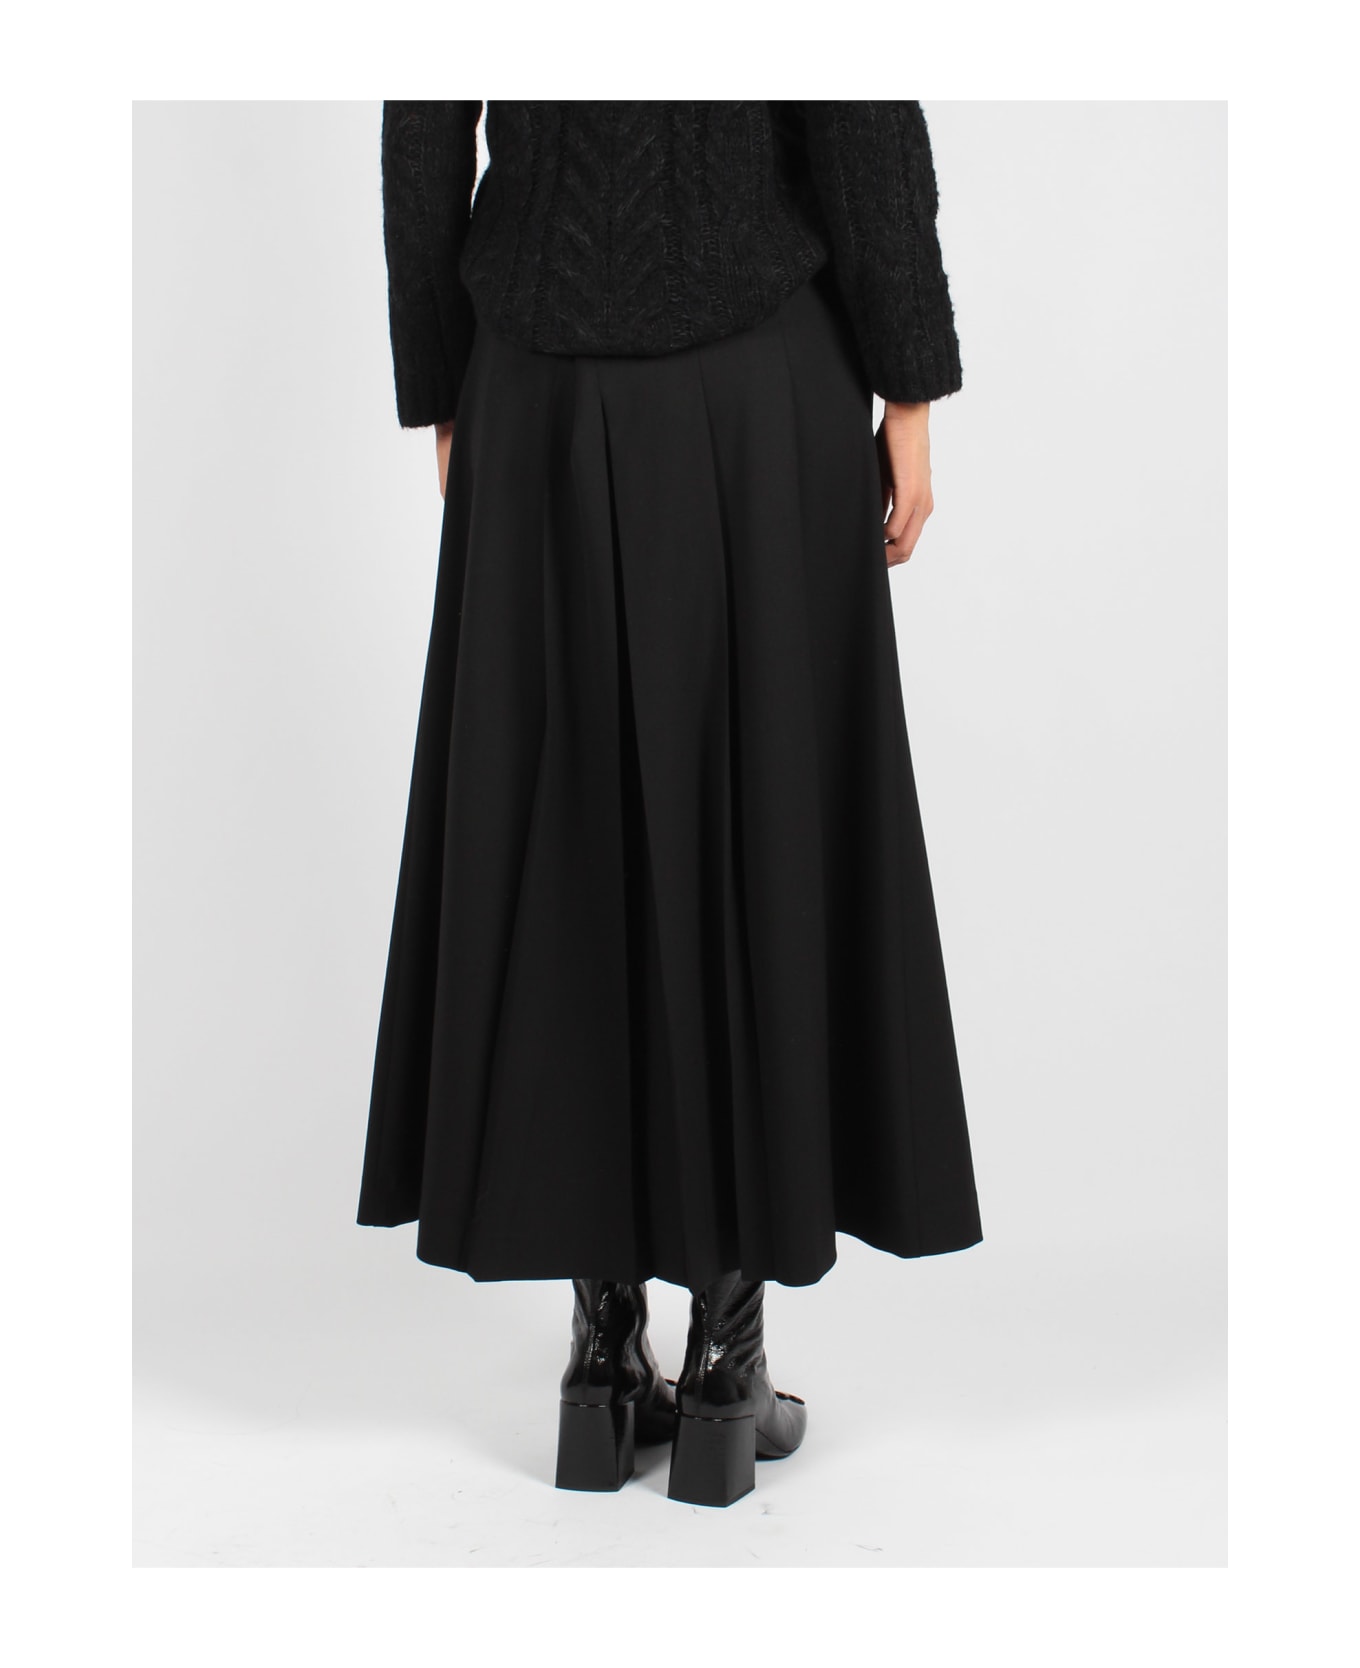 Parosh Pleated Skirt - Black